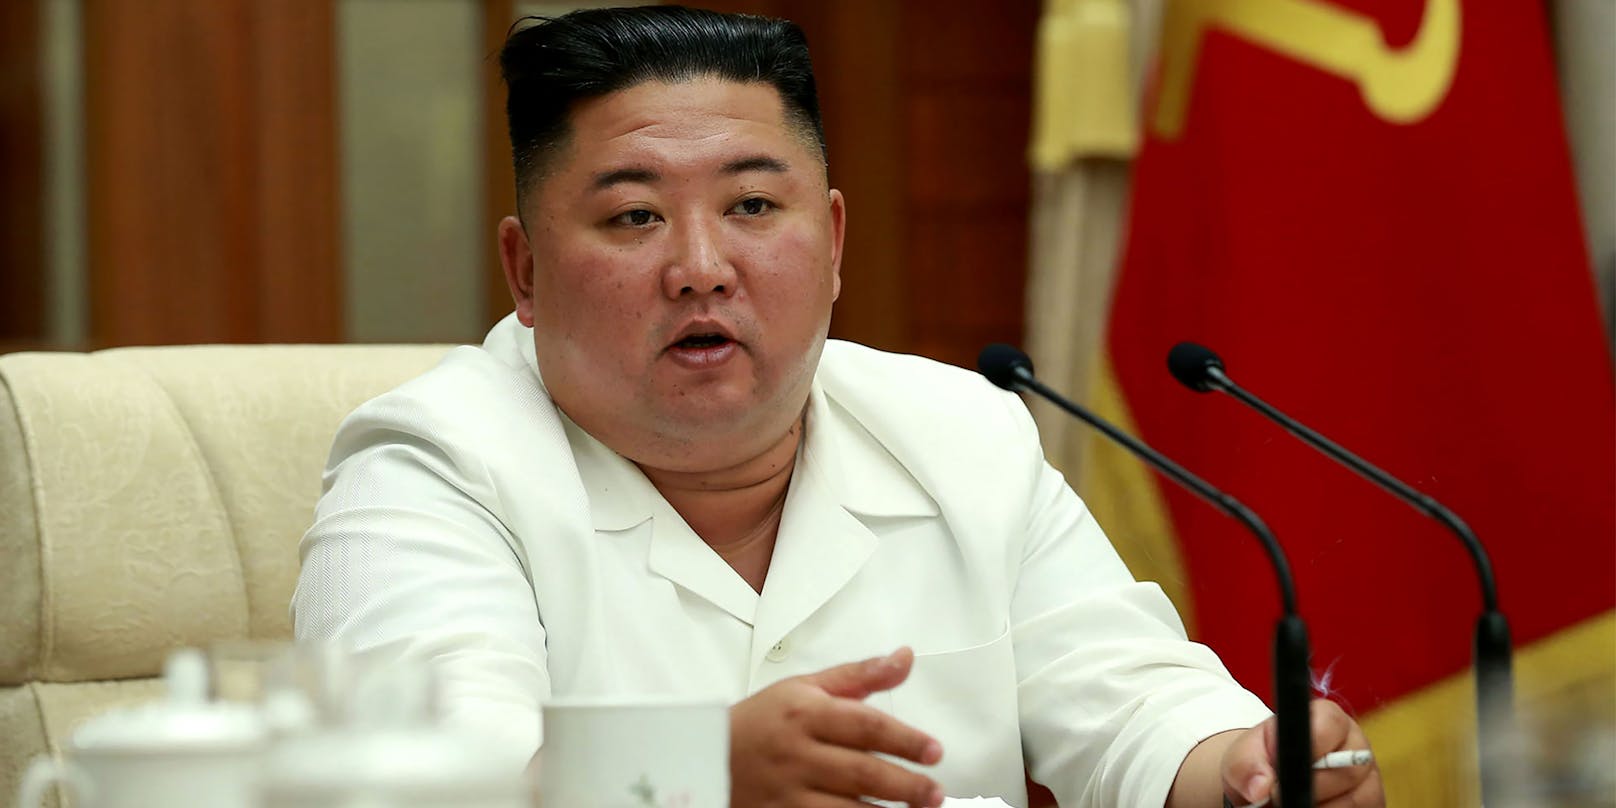 Das Bild wurde am 25. August 2020 aufgenommen und zeigt Kim Jong-un, während er bei einer Krisensitzung in Pjöngjang spricht. 